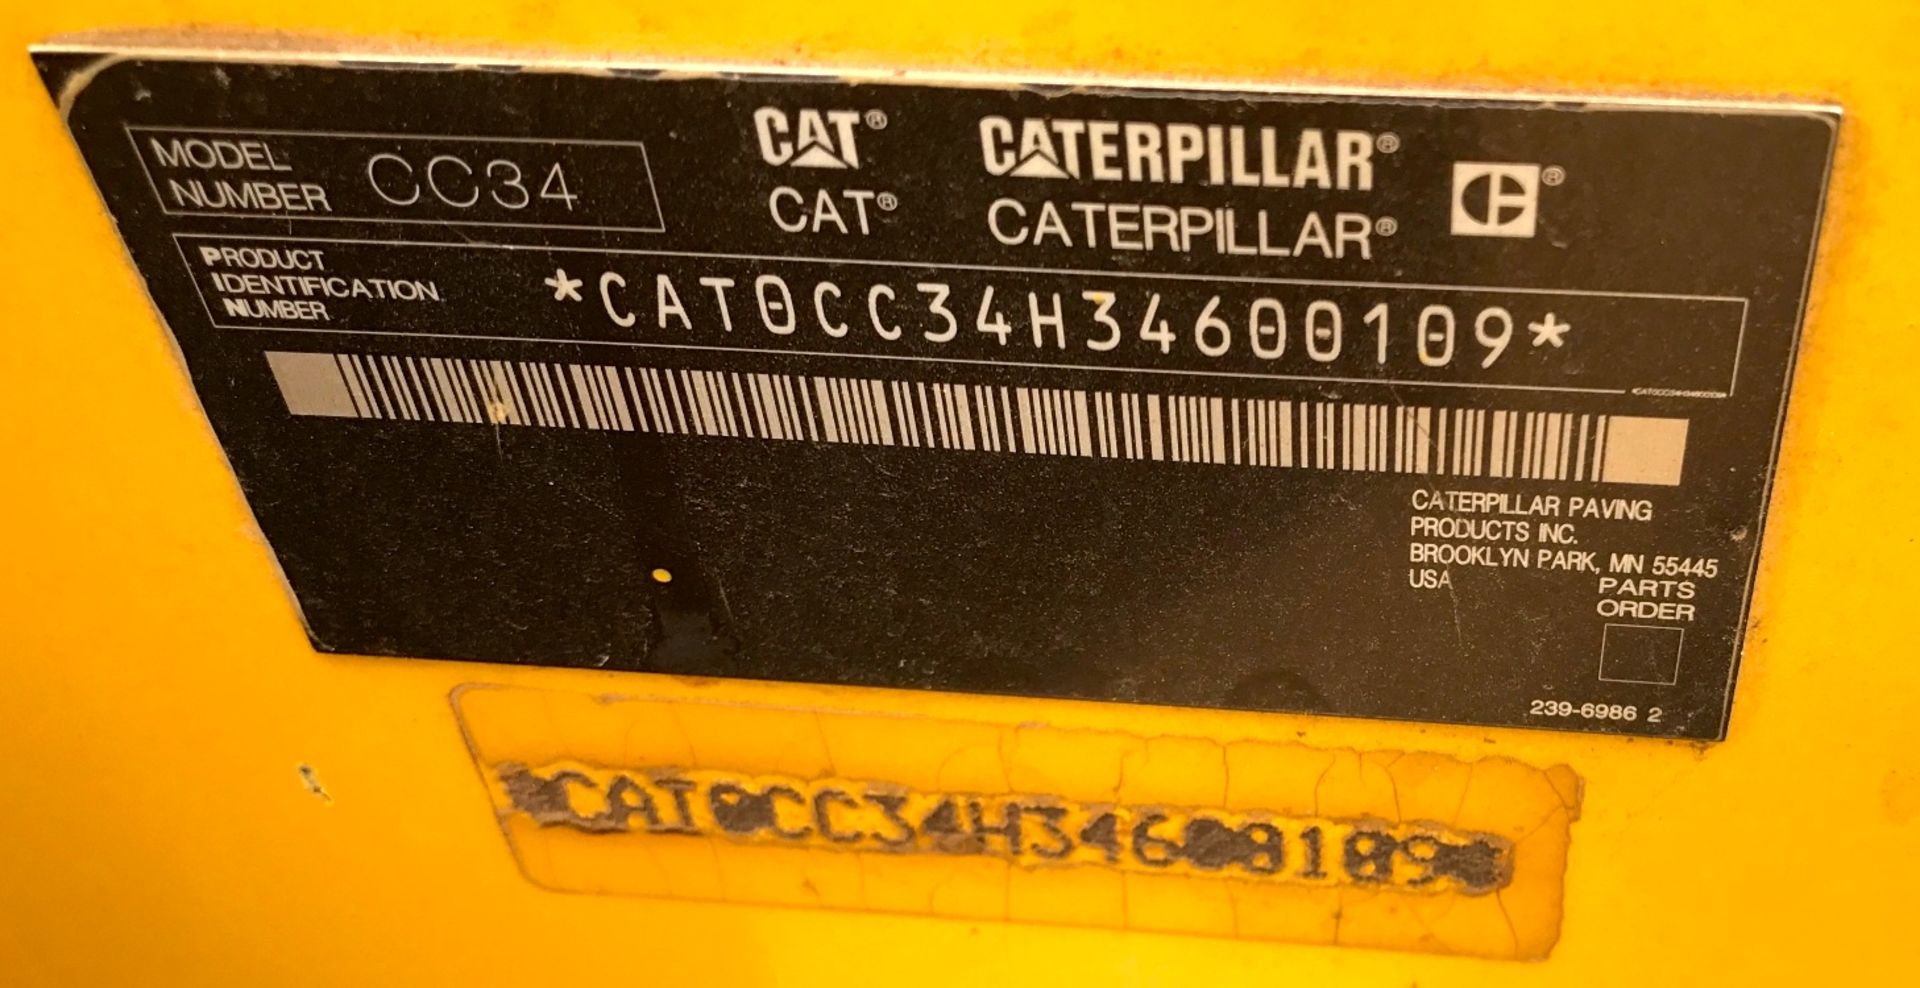 2008 CAT CC34 RIDE ON ROLLER - (CAT0CC34H34600109) - Image 2 of 3